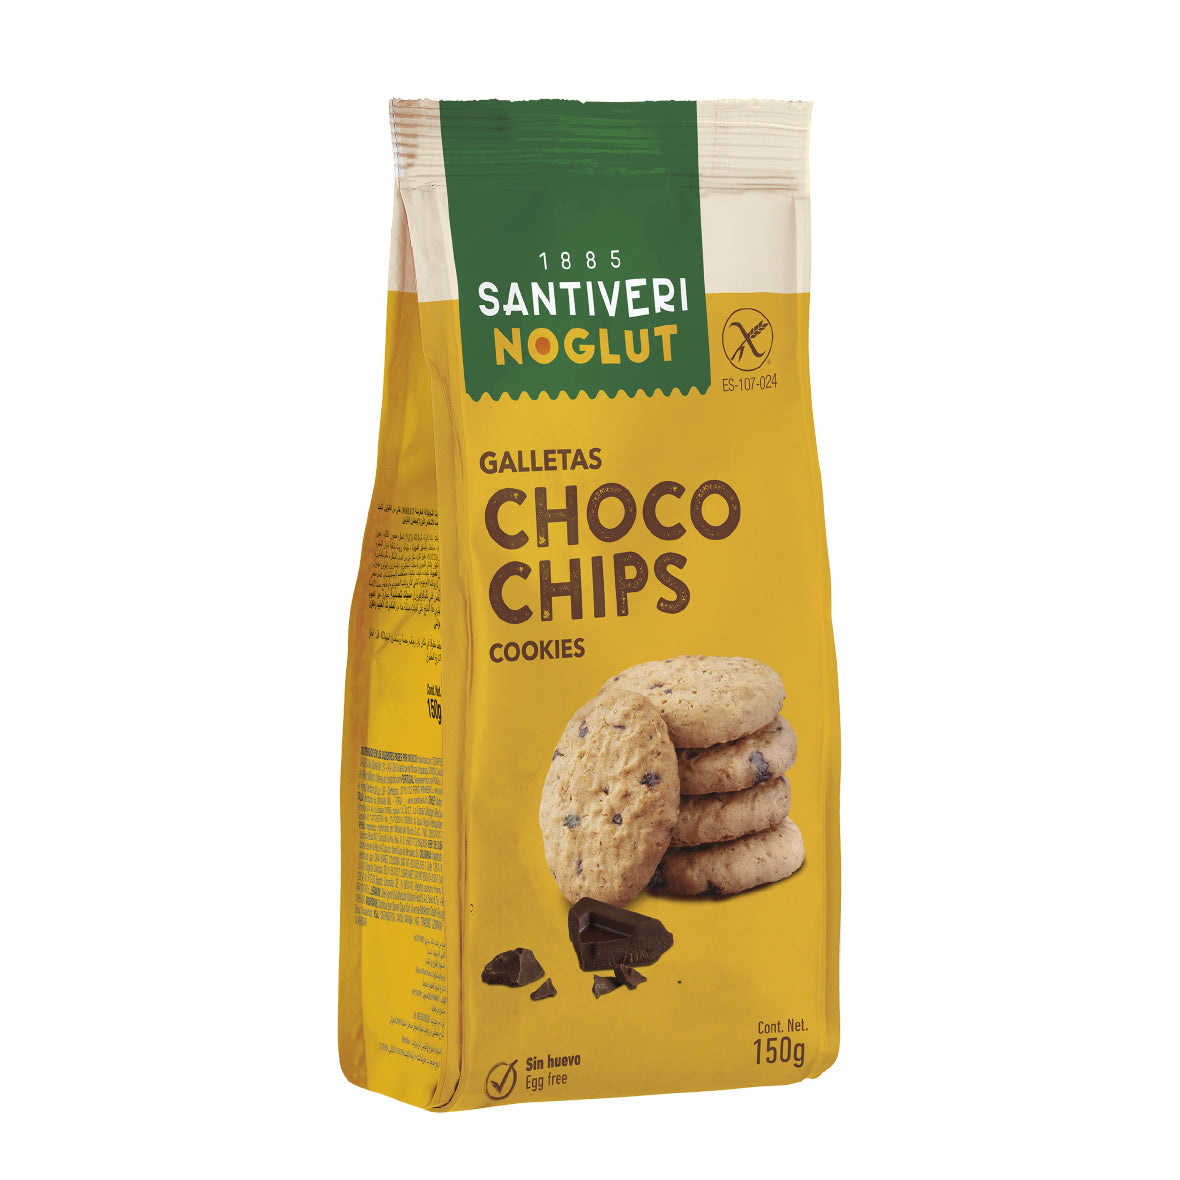 Santiveri Noglut Gluten Free Choco Chip Cookies 150g